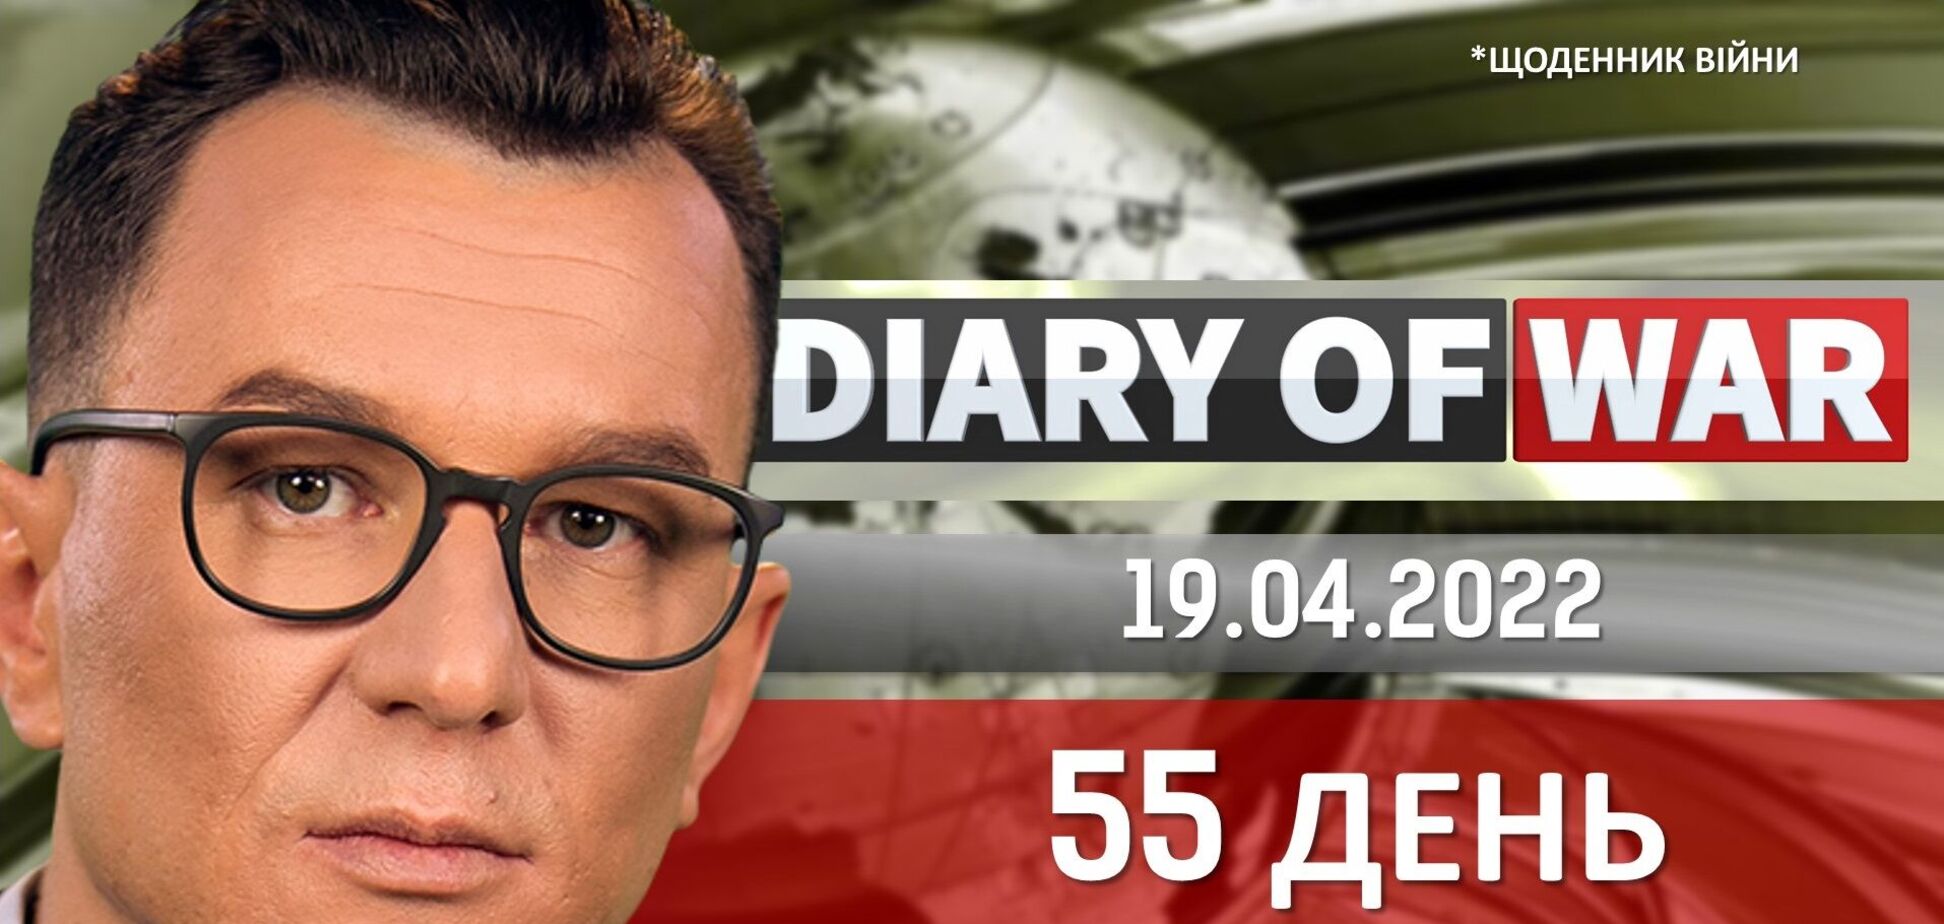 Вторжение в Беларусь, тело убитого Навального, арест активов Виктора Медведчука, – темы дневника войны от Вячеслава Буткалюка